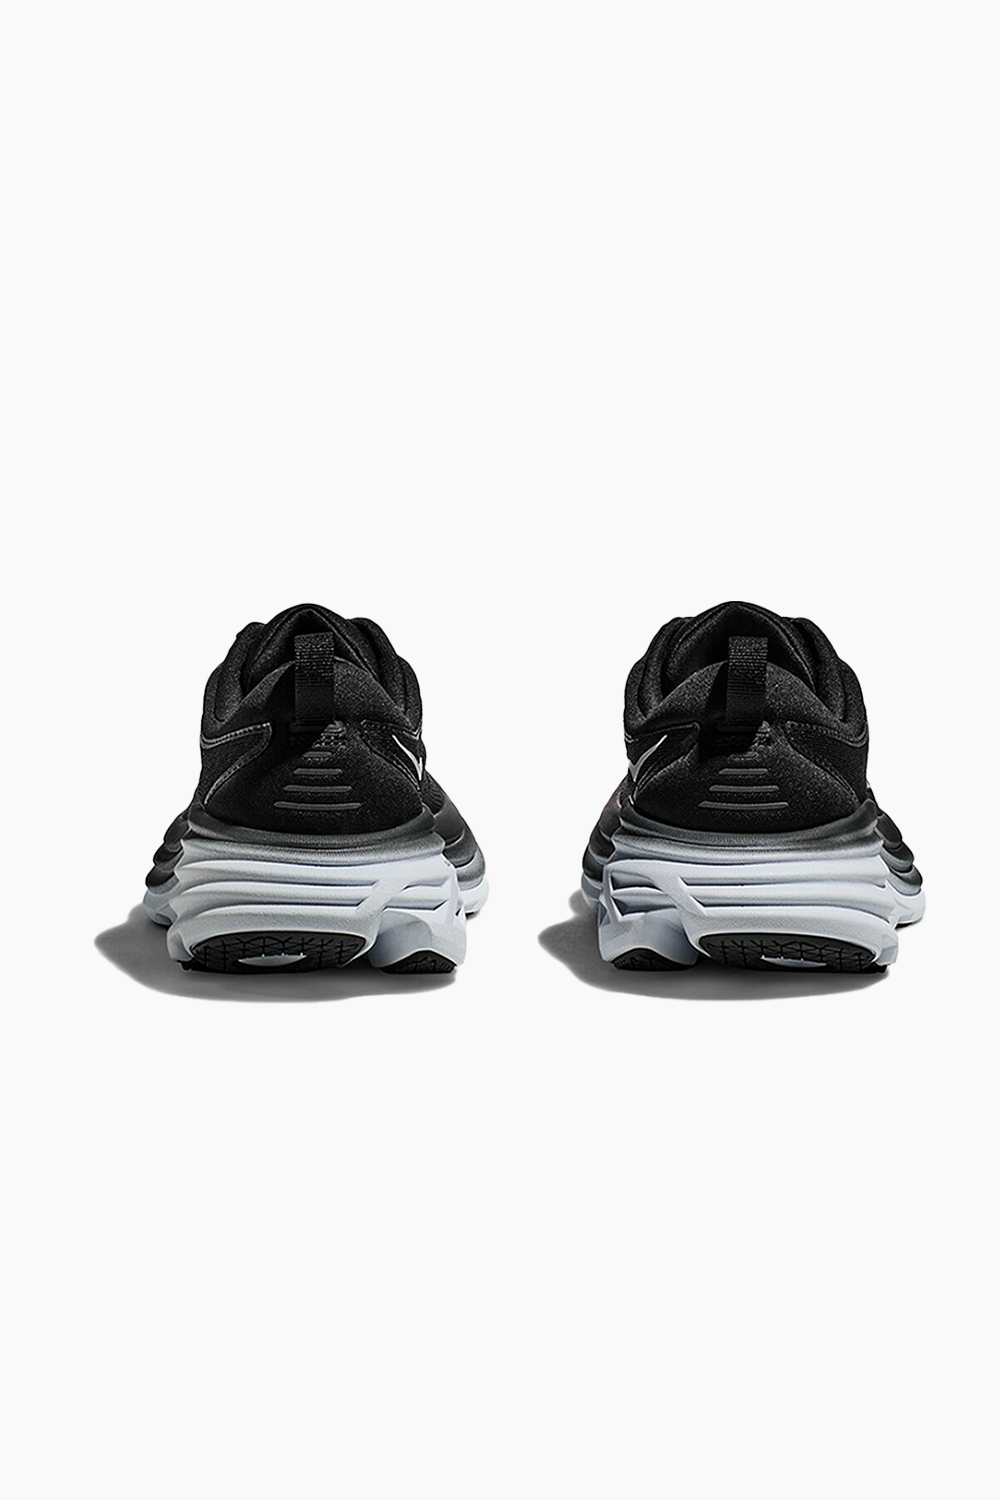 Hoka Men's Bondi 8 Sneaker in Black/White